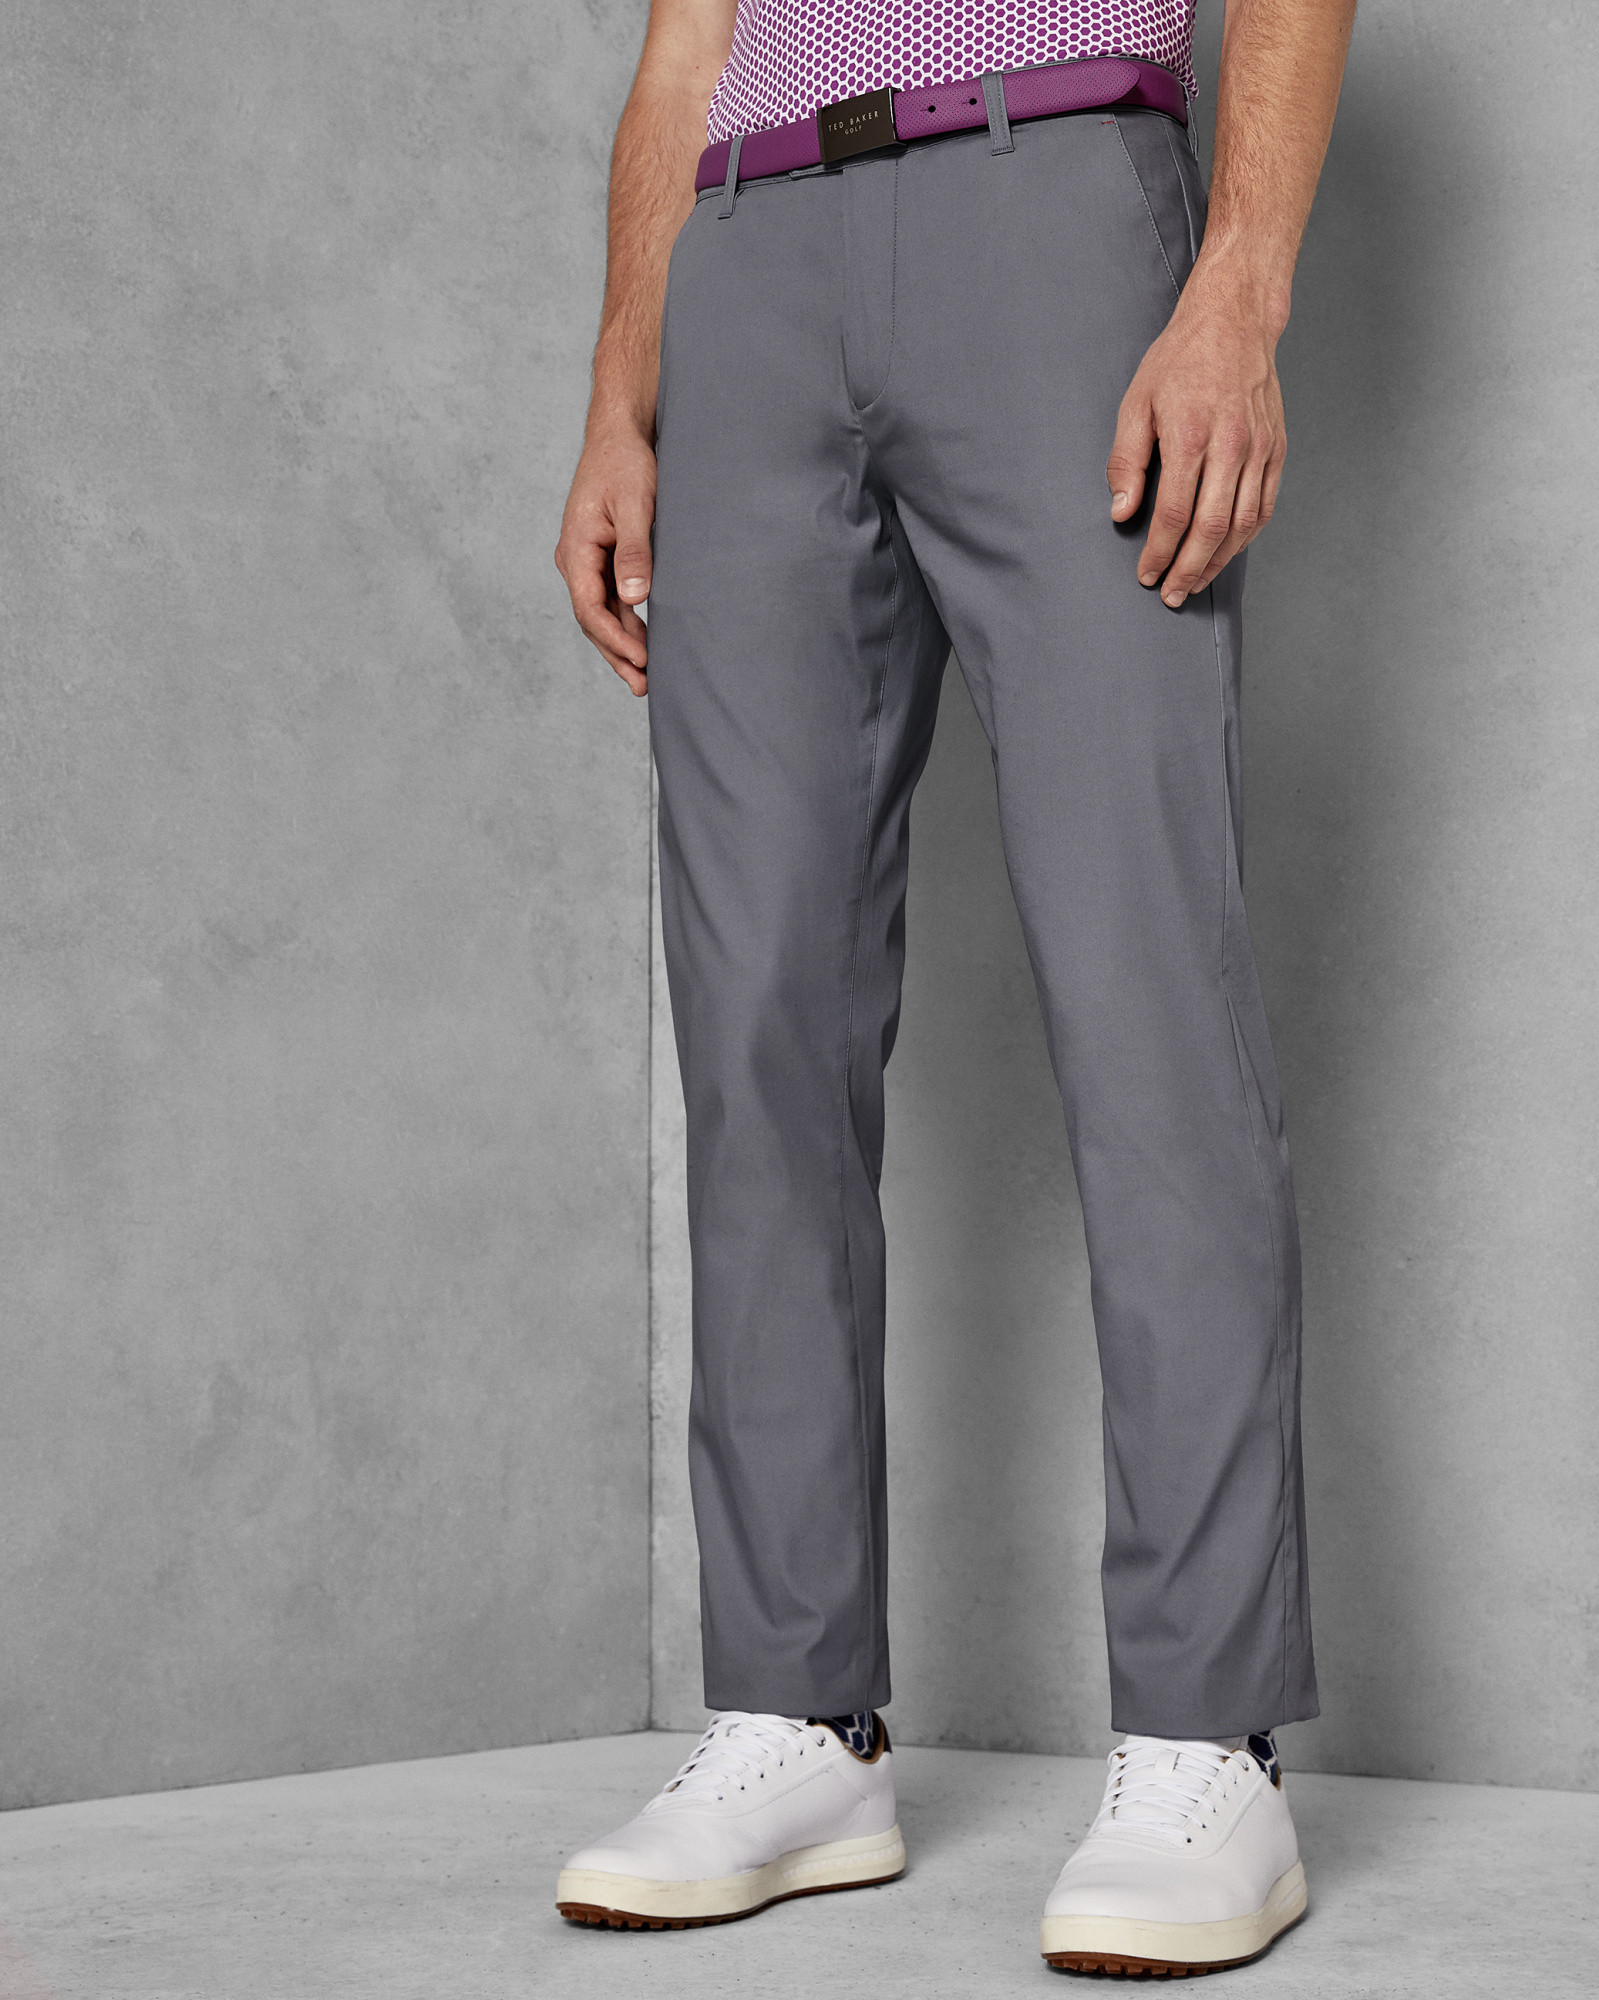 JAGUR Golf plain trousers